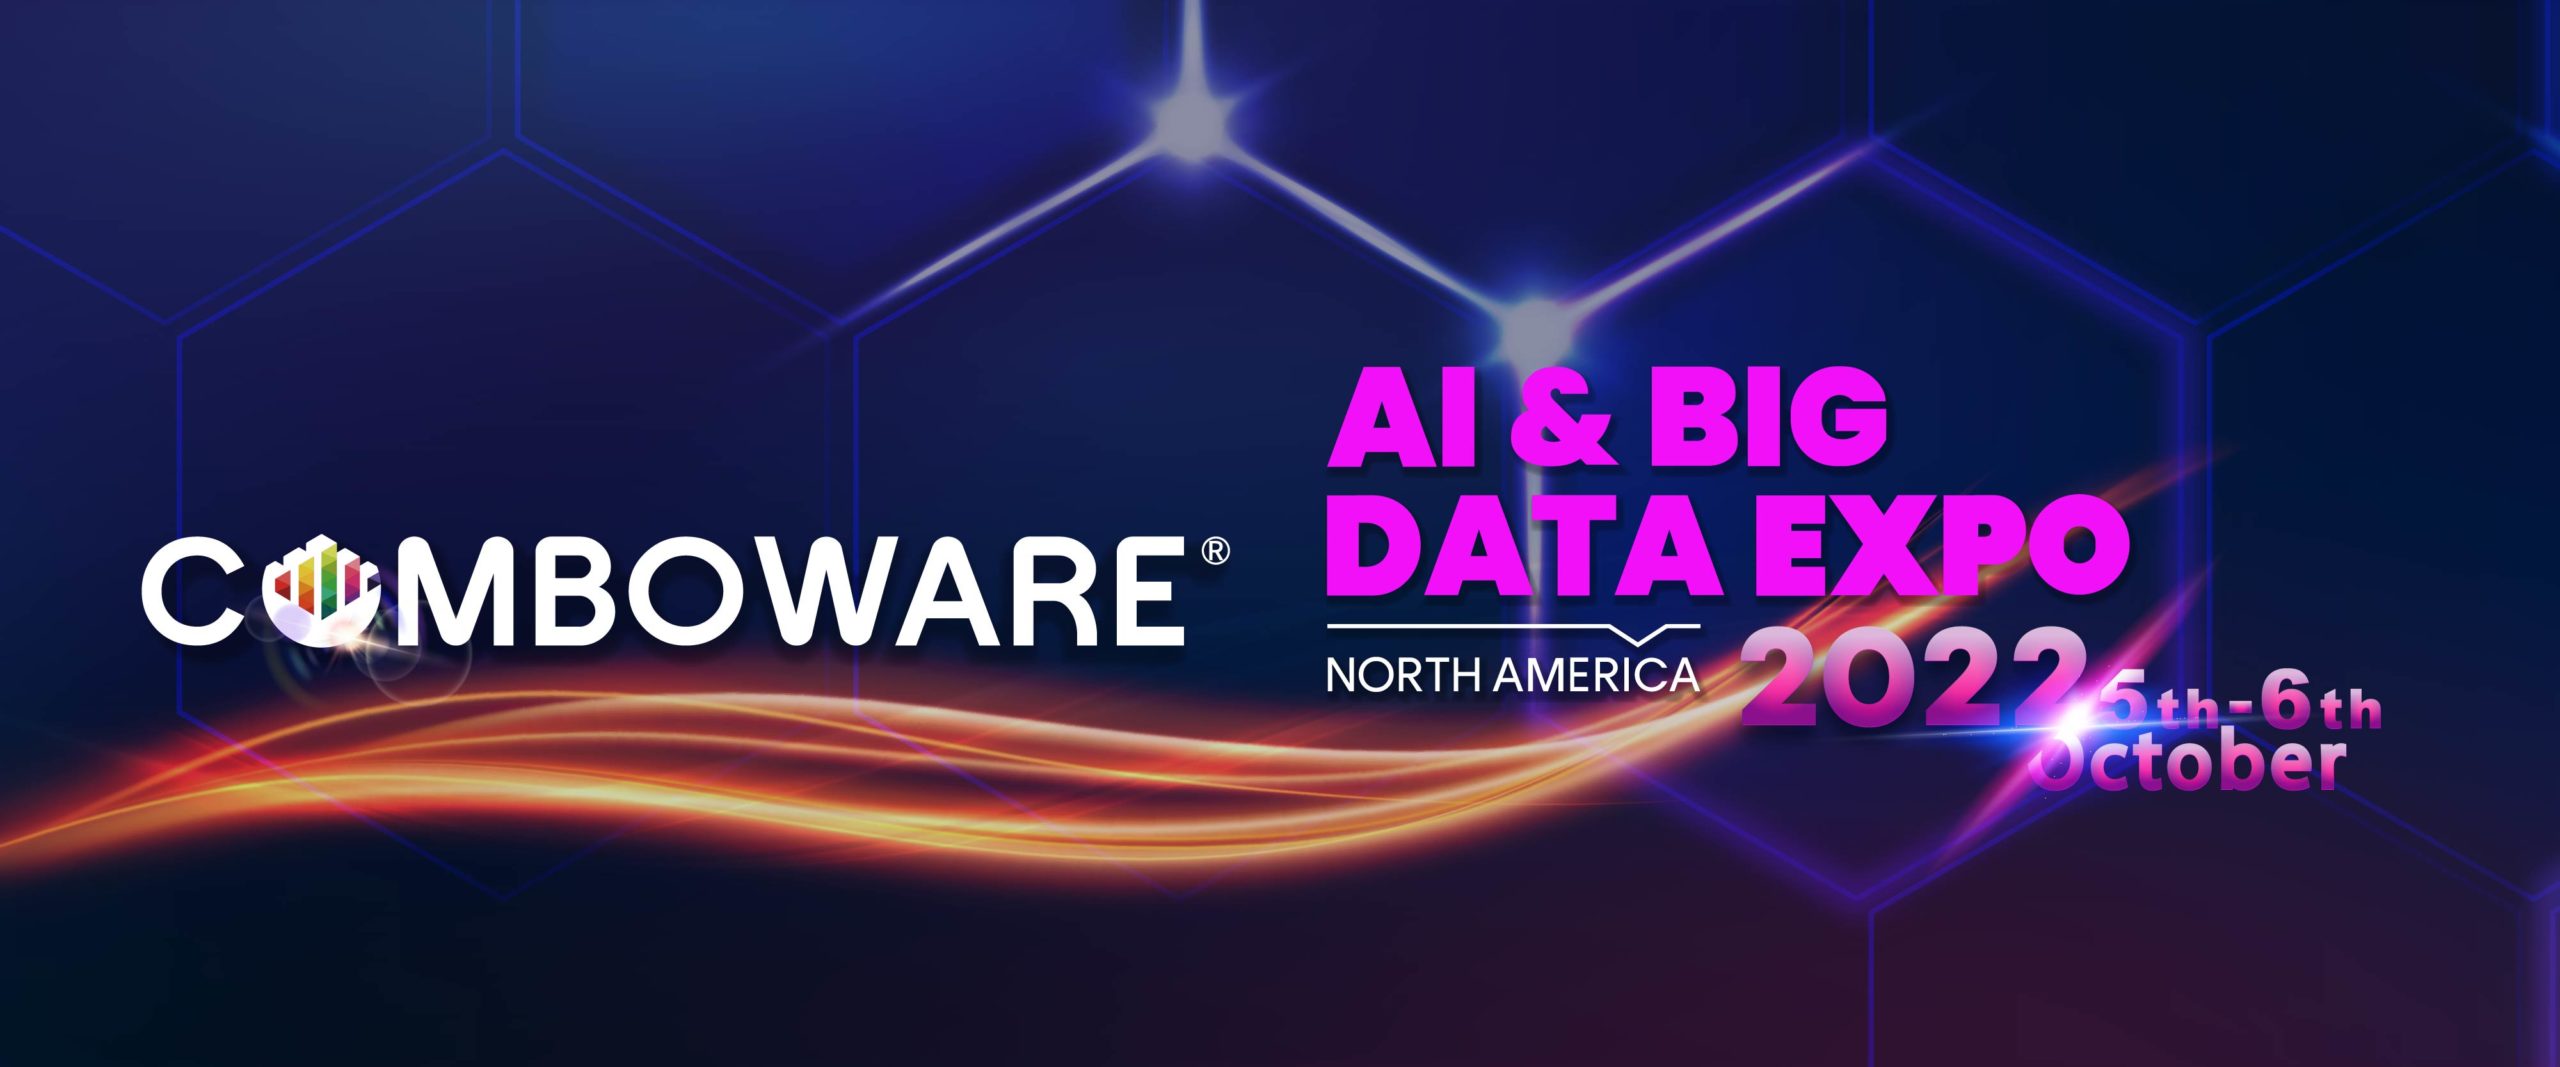 AI &BIG DATA EXPO – North America